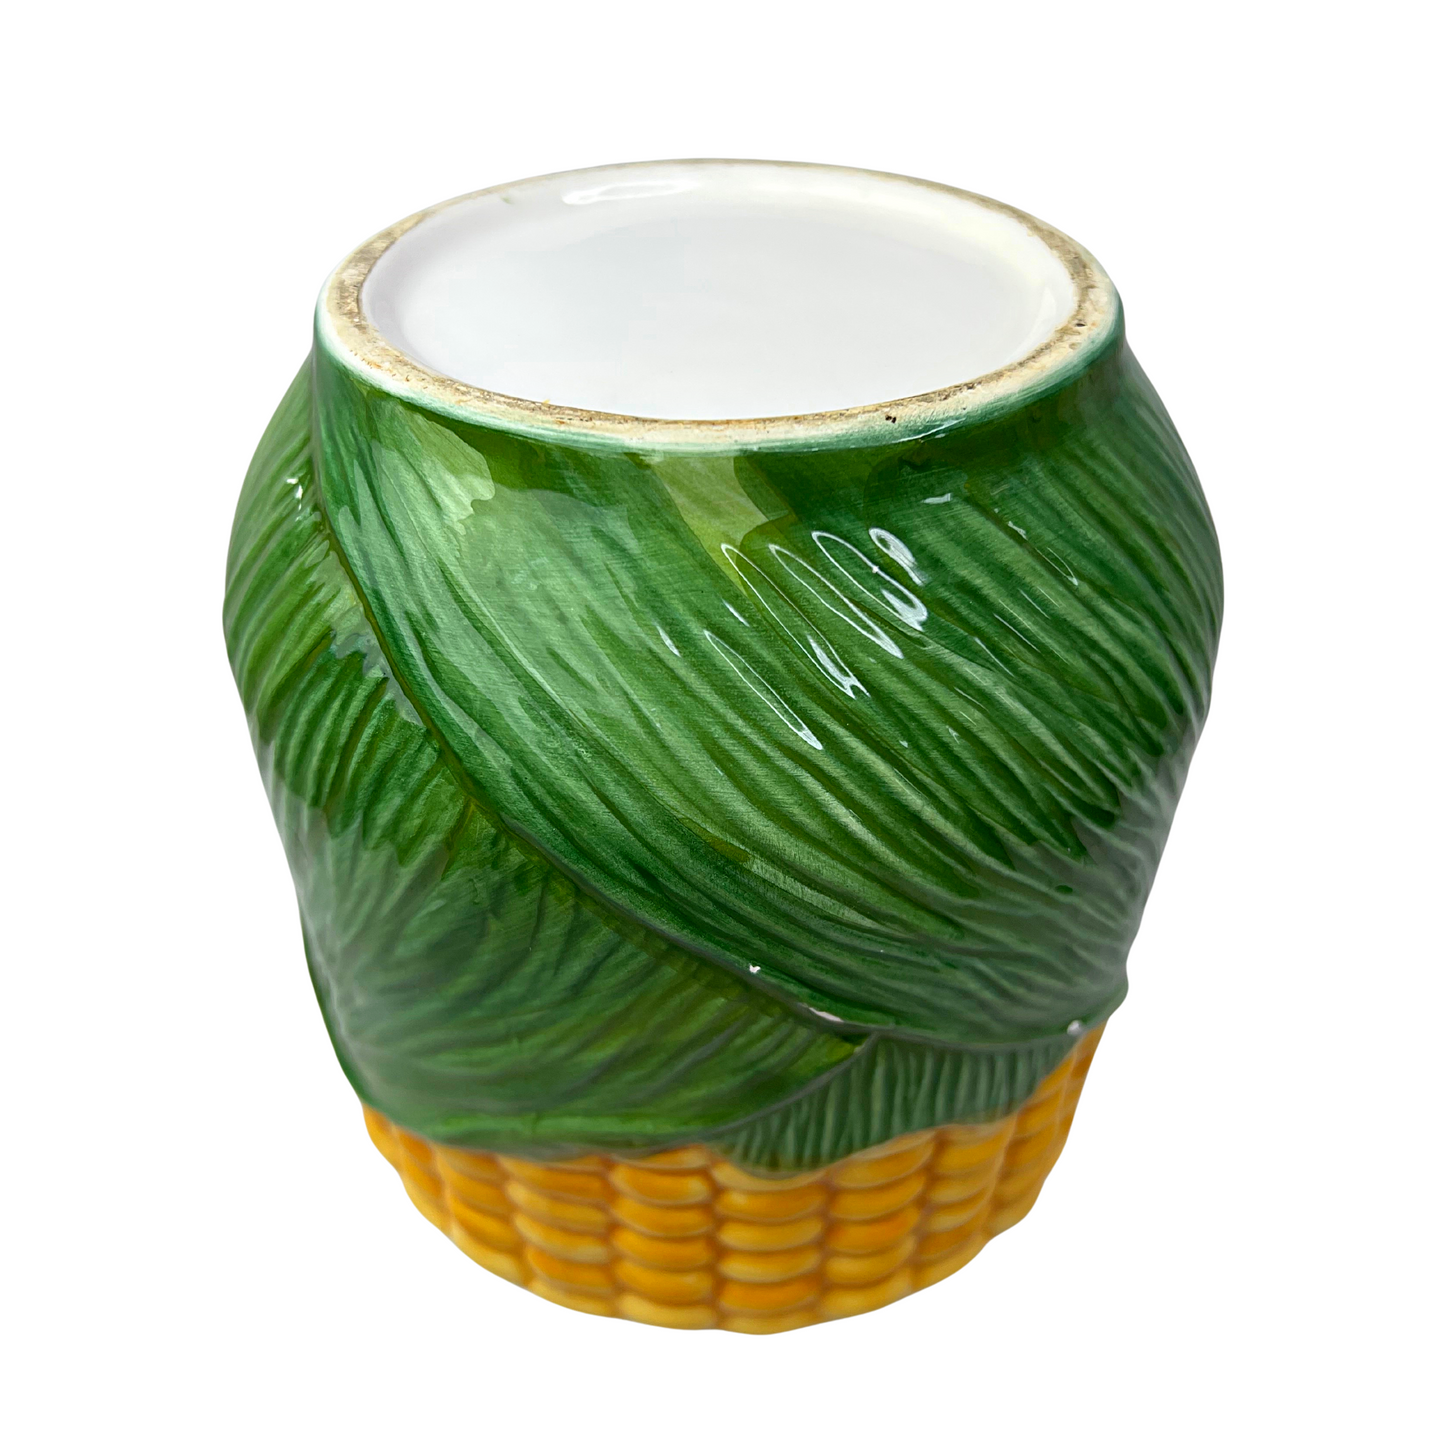 Vintage Corn on the Cob Ceramic Cookie Jar 10”